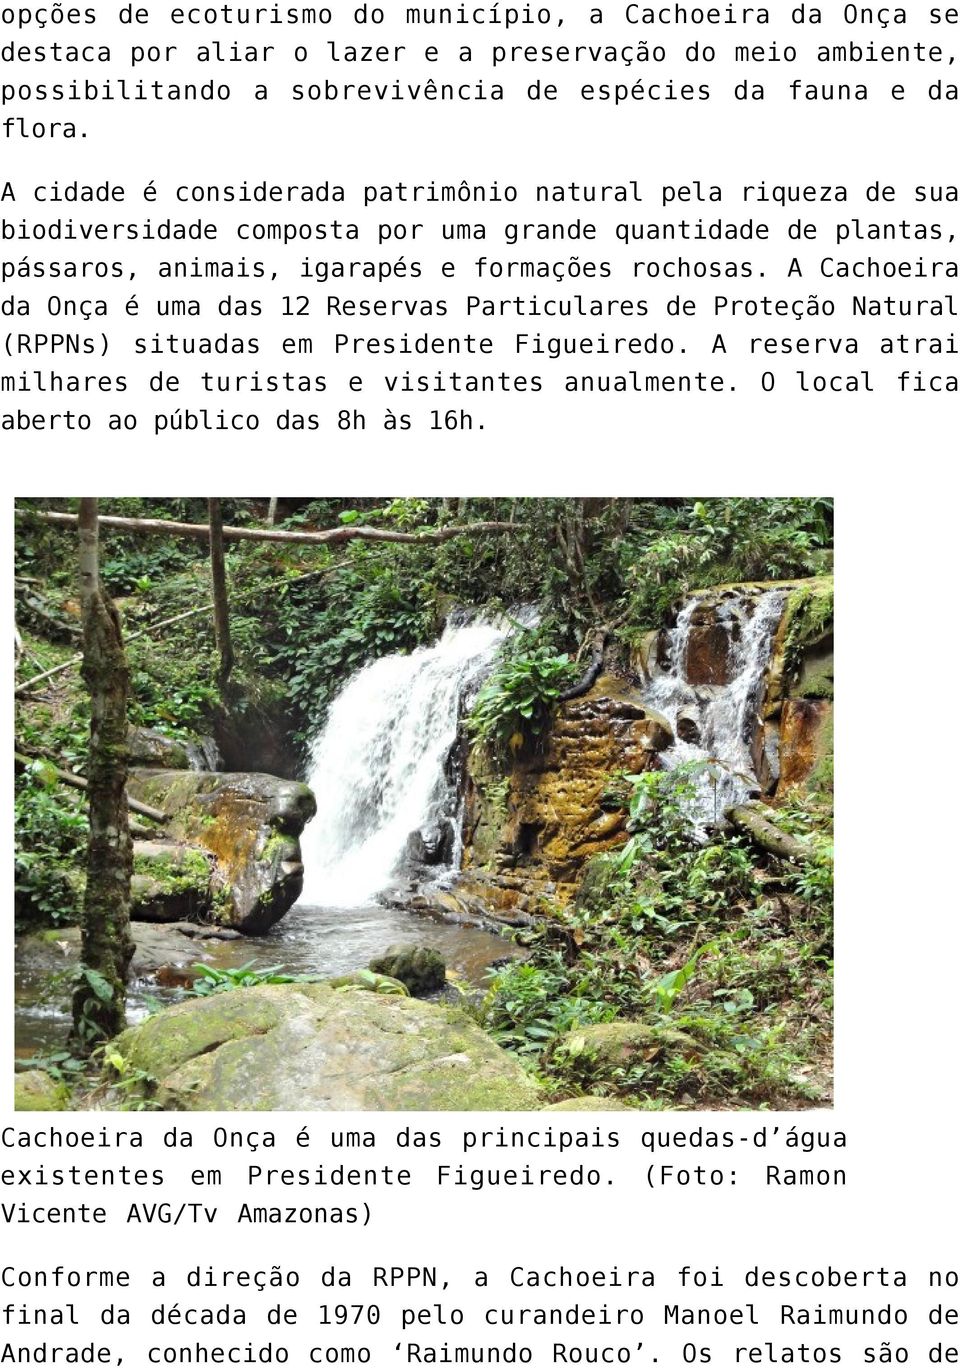 A Cachoeira da Onça é uma das 12 Reservas Particulares de Proteção Natural (RPPNs) situadas em Presidente Figueiredo. A reserva atrai milhares de turistas e visitantes anualmente.